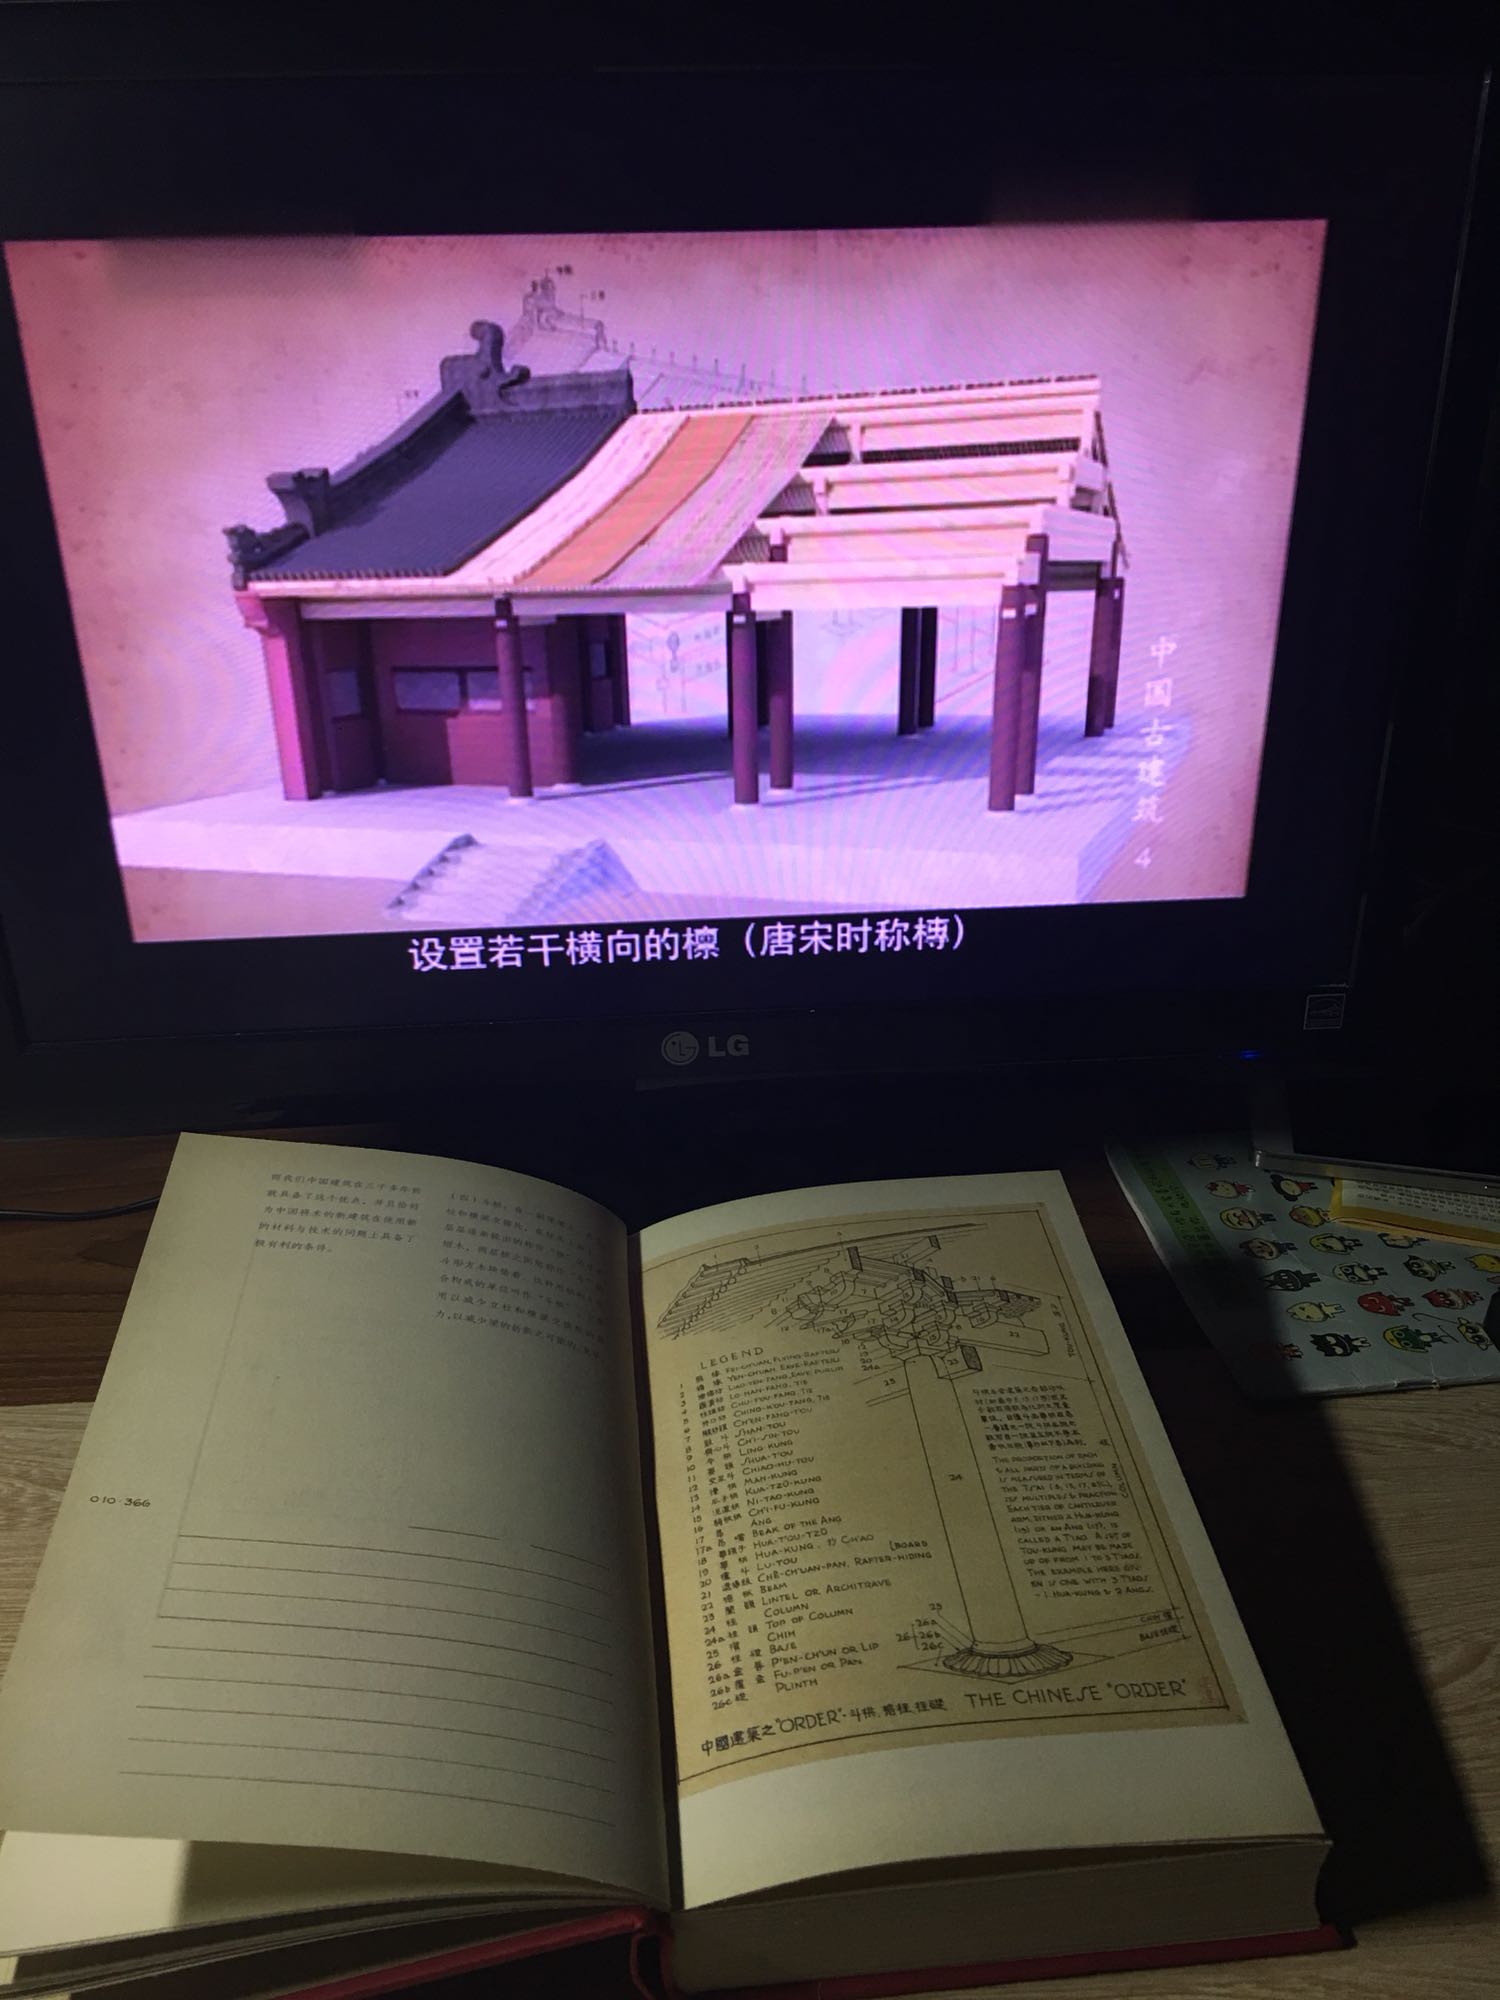 书本质量很好，不过空白的也挺多，留点想象的空间。可以写下想象的内容。建议购书者可以先看看电视记录篇的中国古建筑。之后再因图来写下自己的心得。